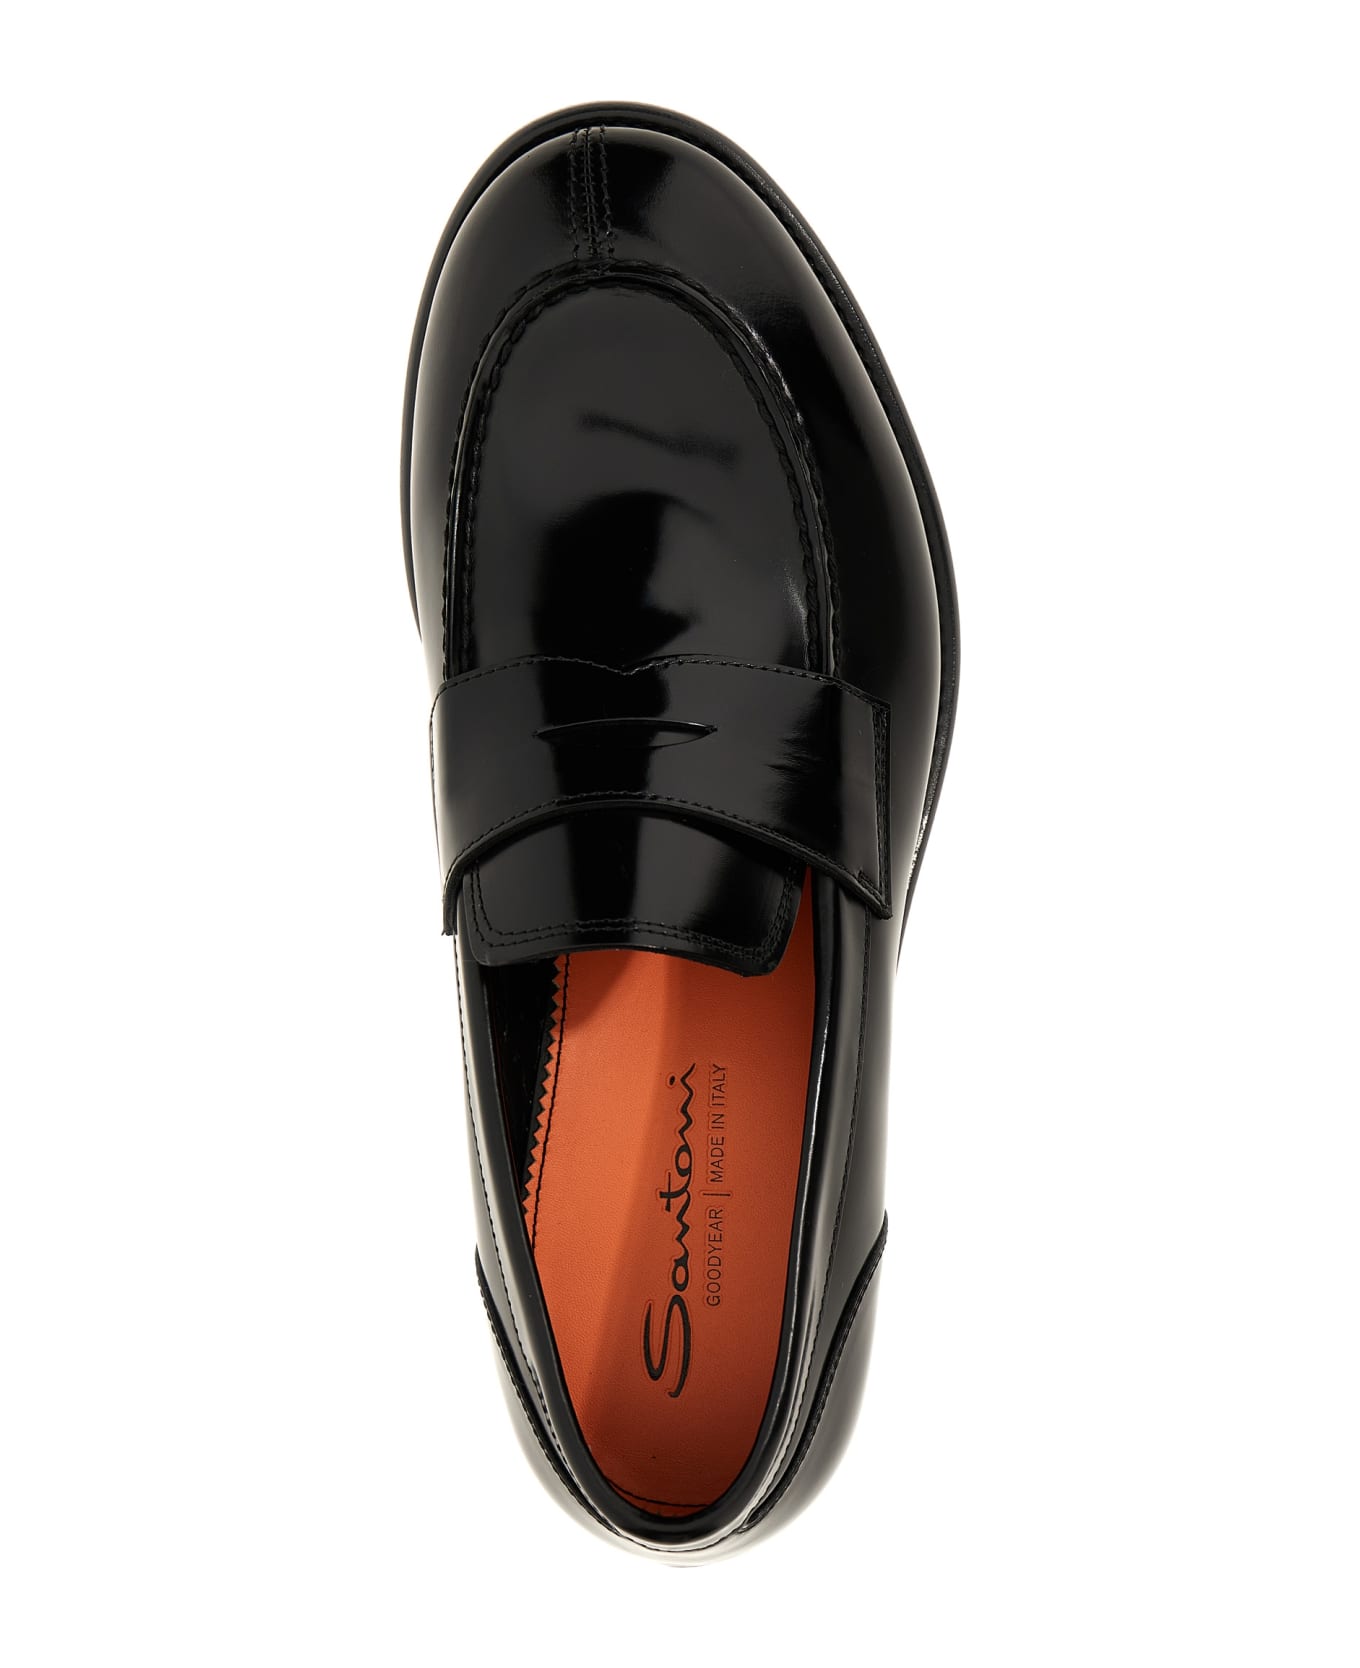 Santoni Leather Loafers - Black  